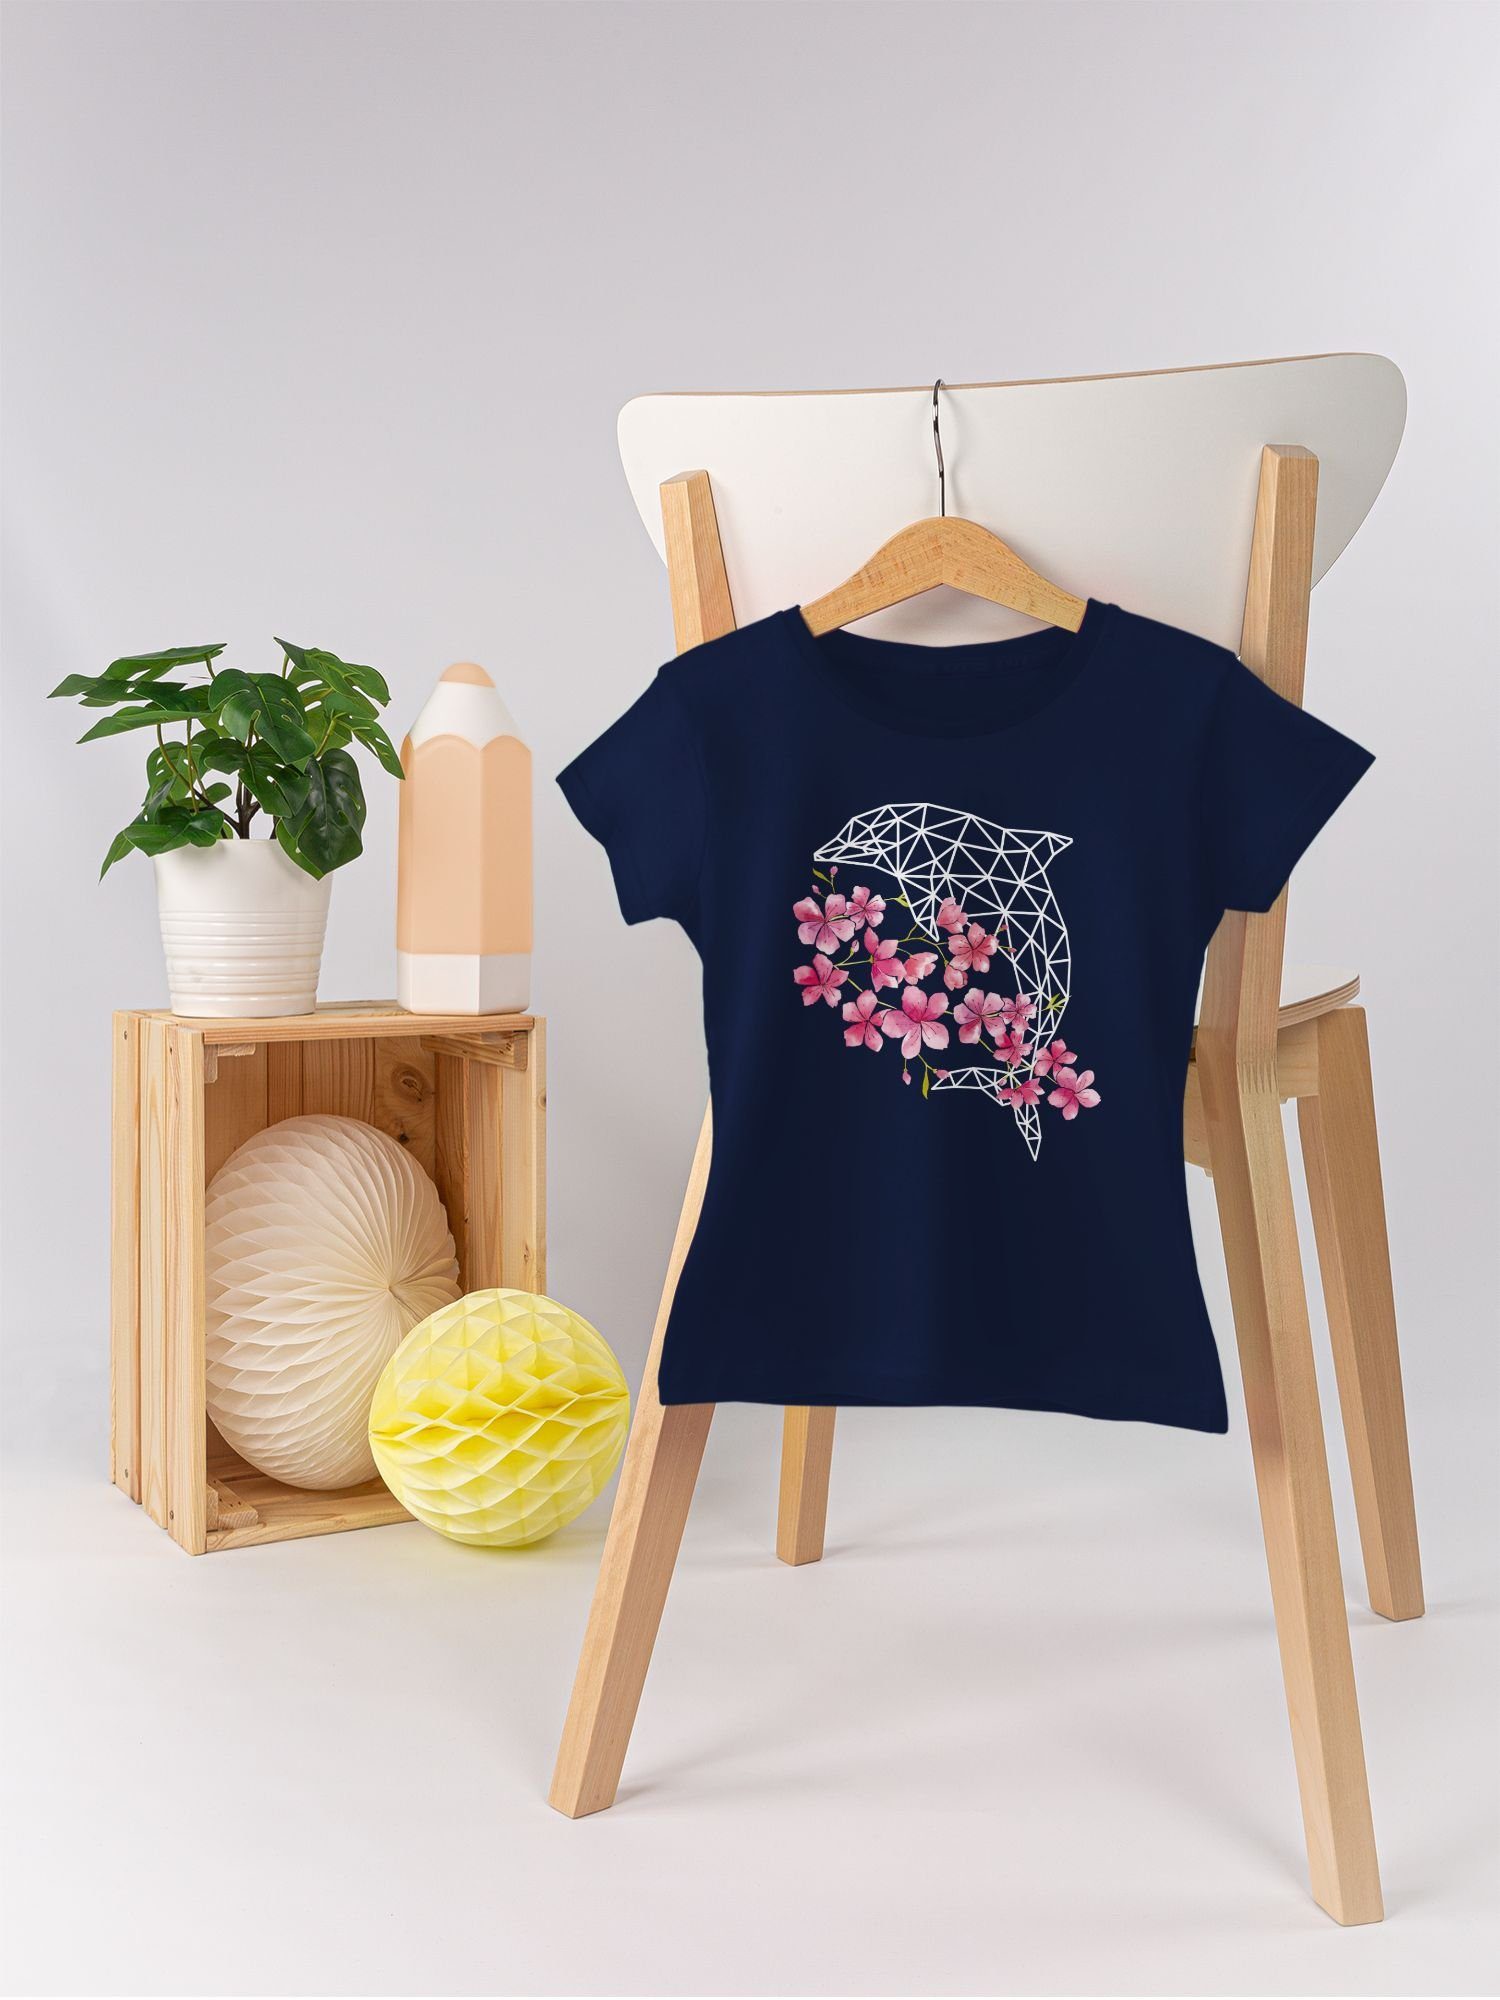 Print 1 Delfin T-Shirt Tiermotiv Animal Blumen Shirtracer Dunkelblau mit